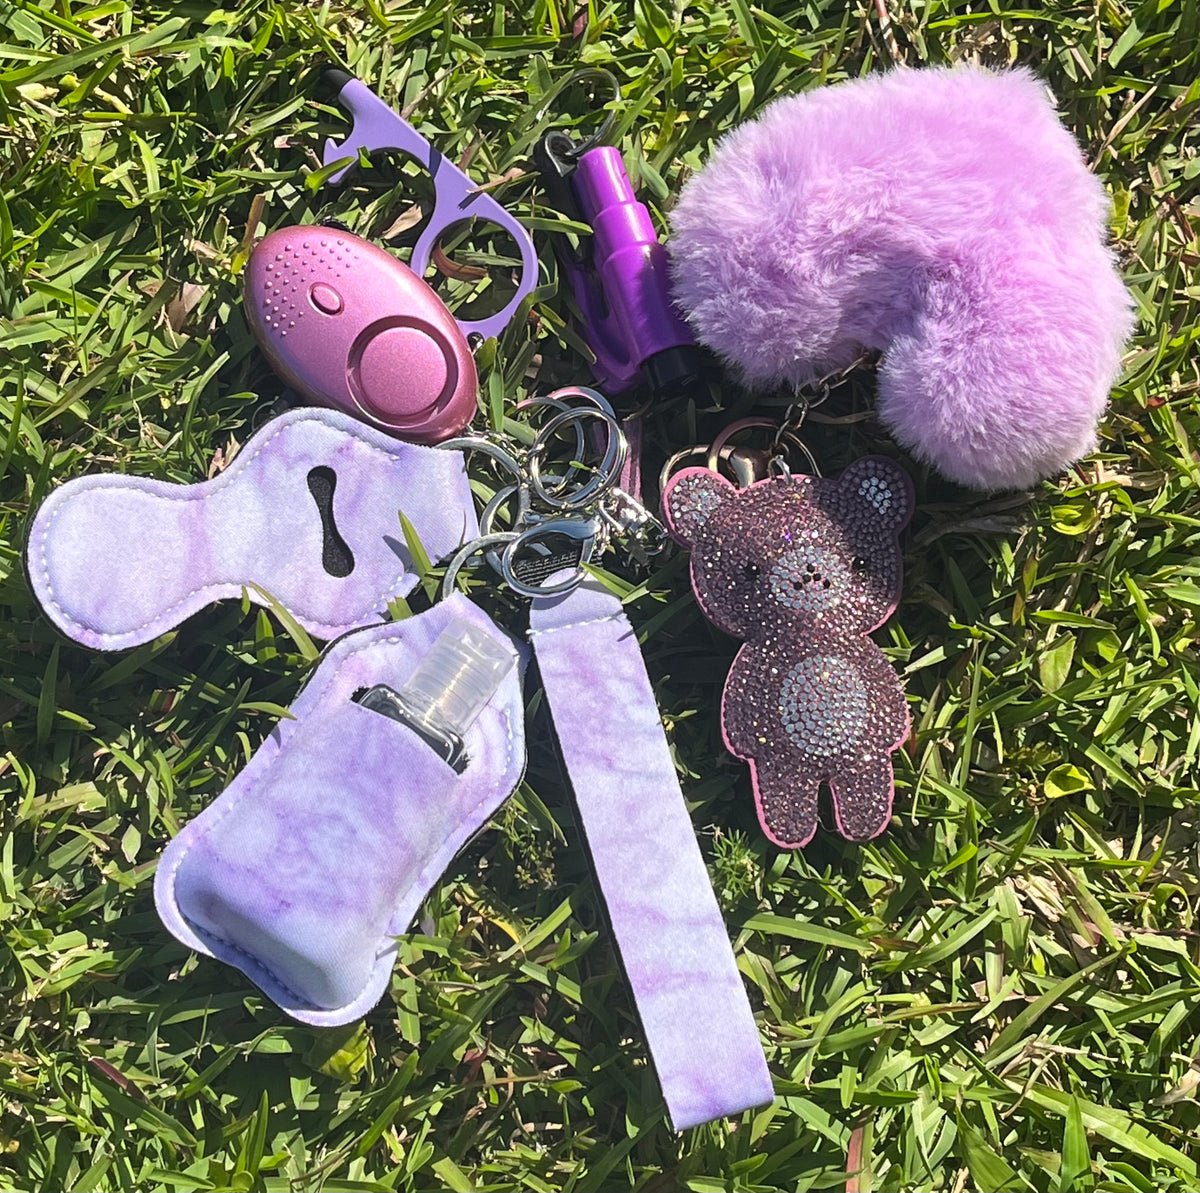 15 Piece Purple Safety Keychain